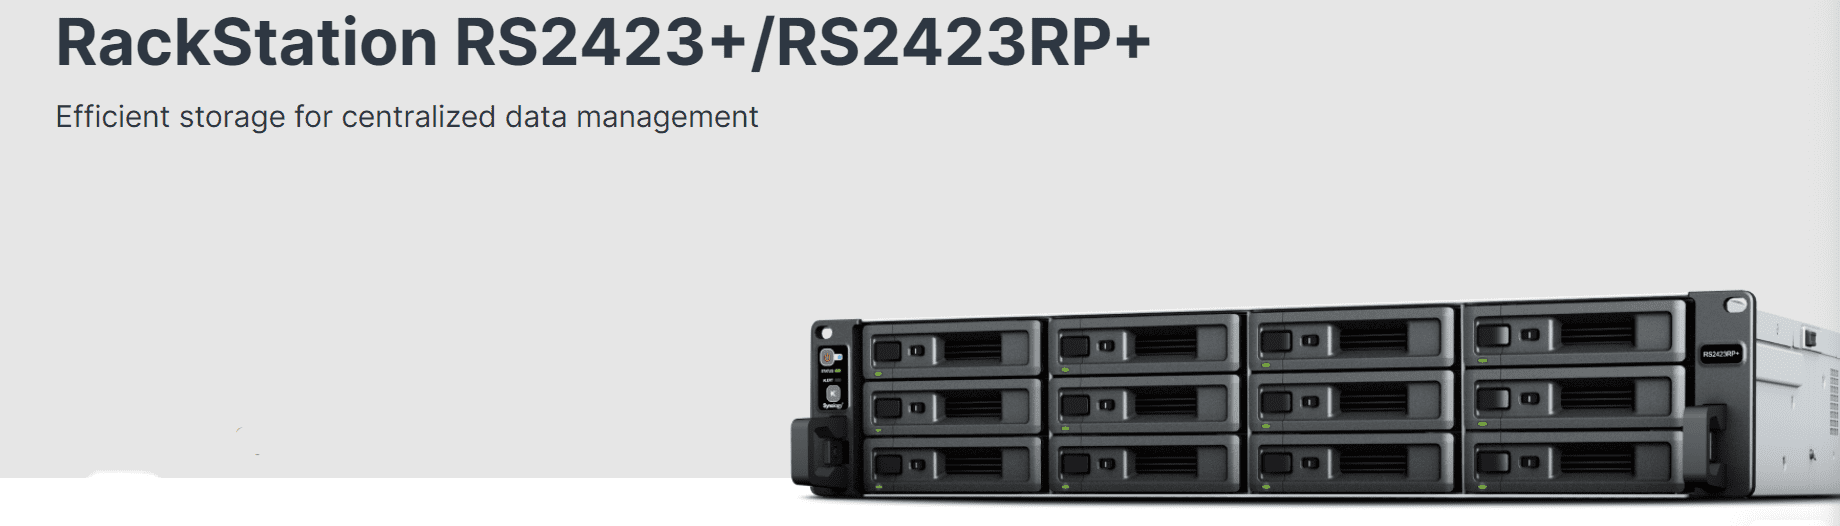 Synology RackStation RS2423+ và RS2423RP+